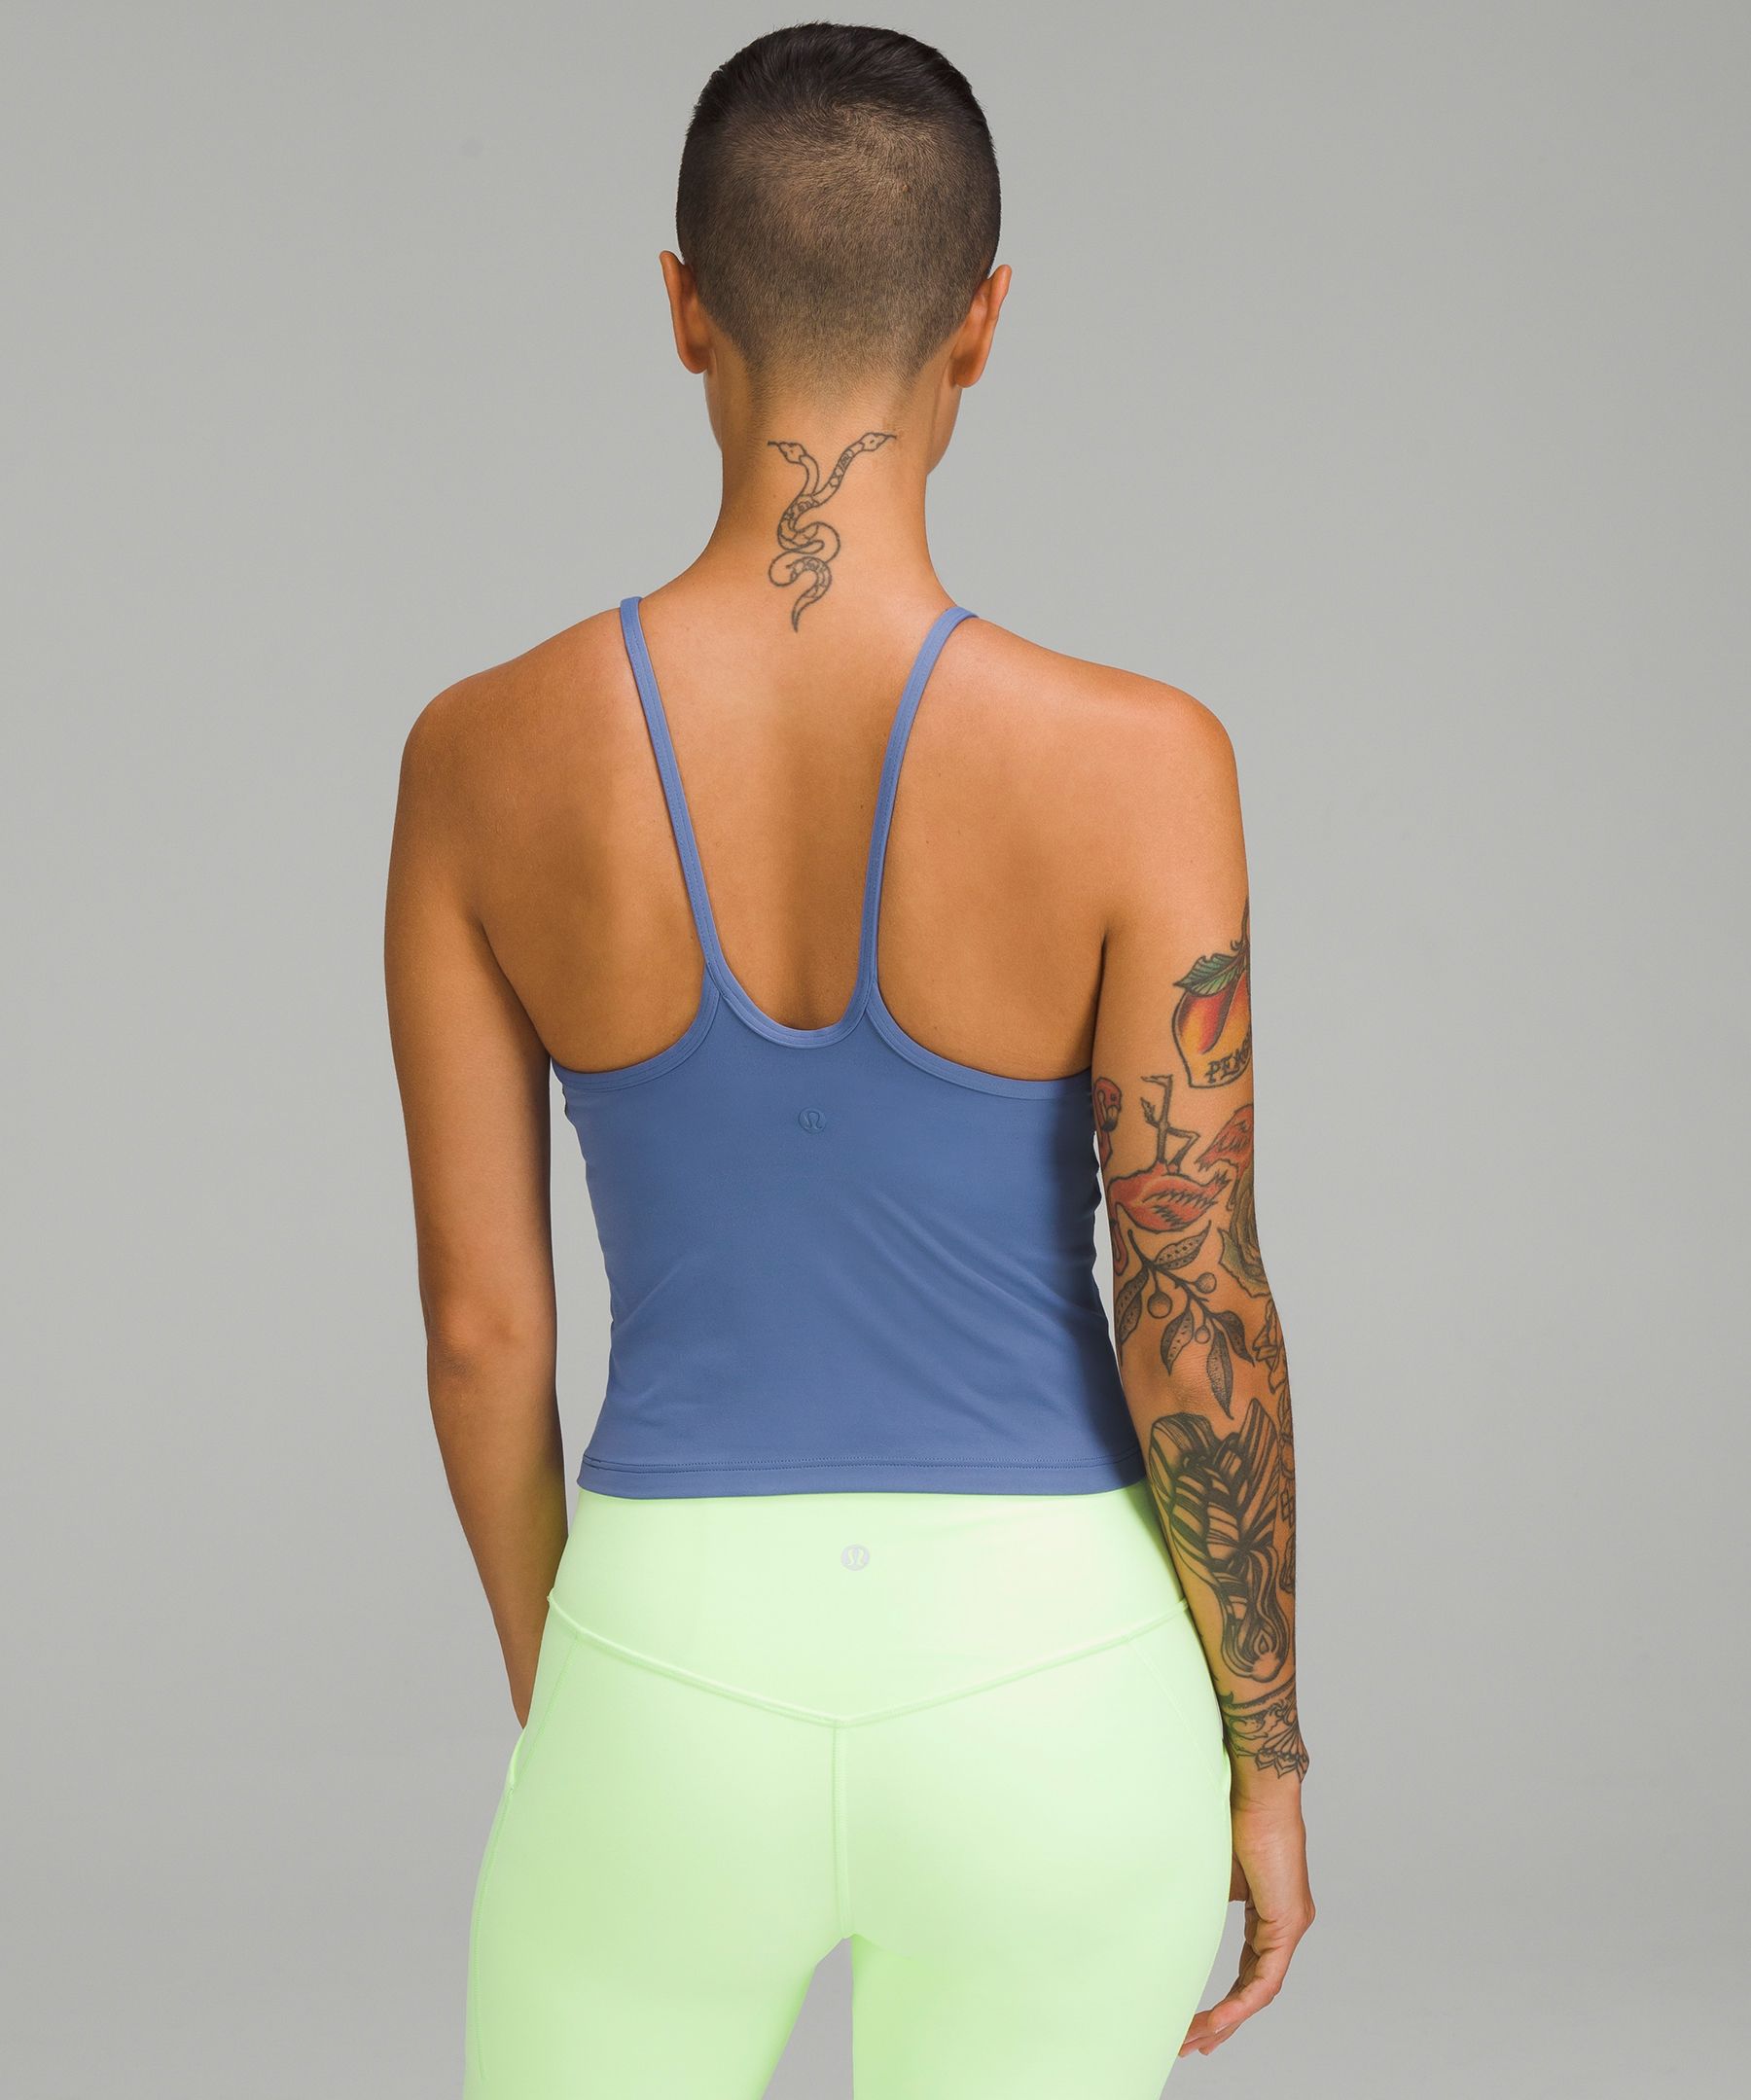 Lightweight High-Neck Yoga Tank Top, Women's Sleeveless & Tank Tops